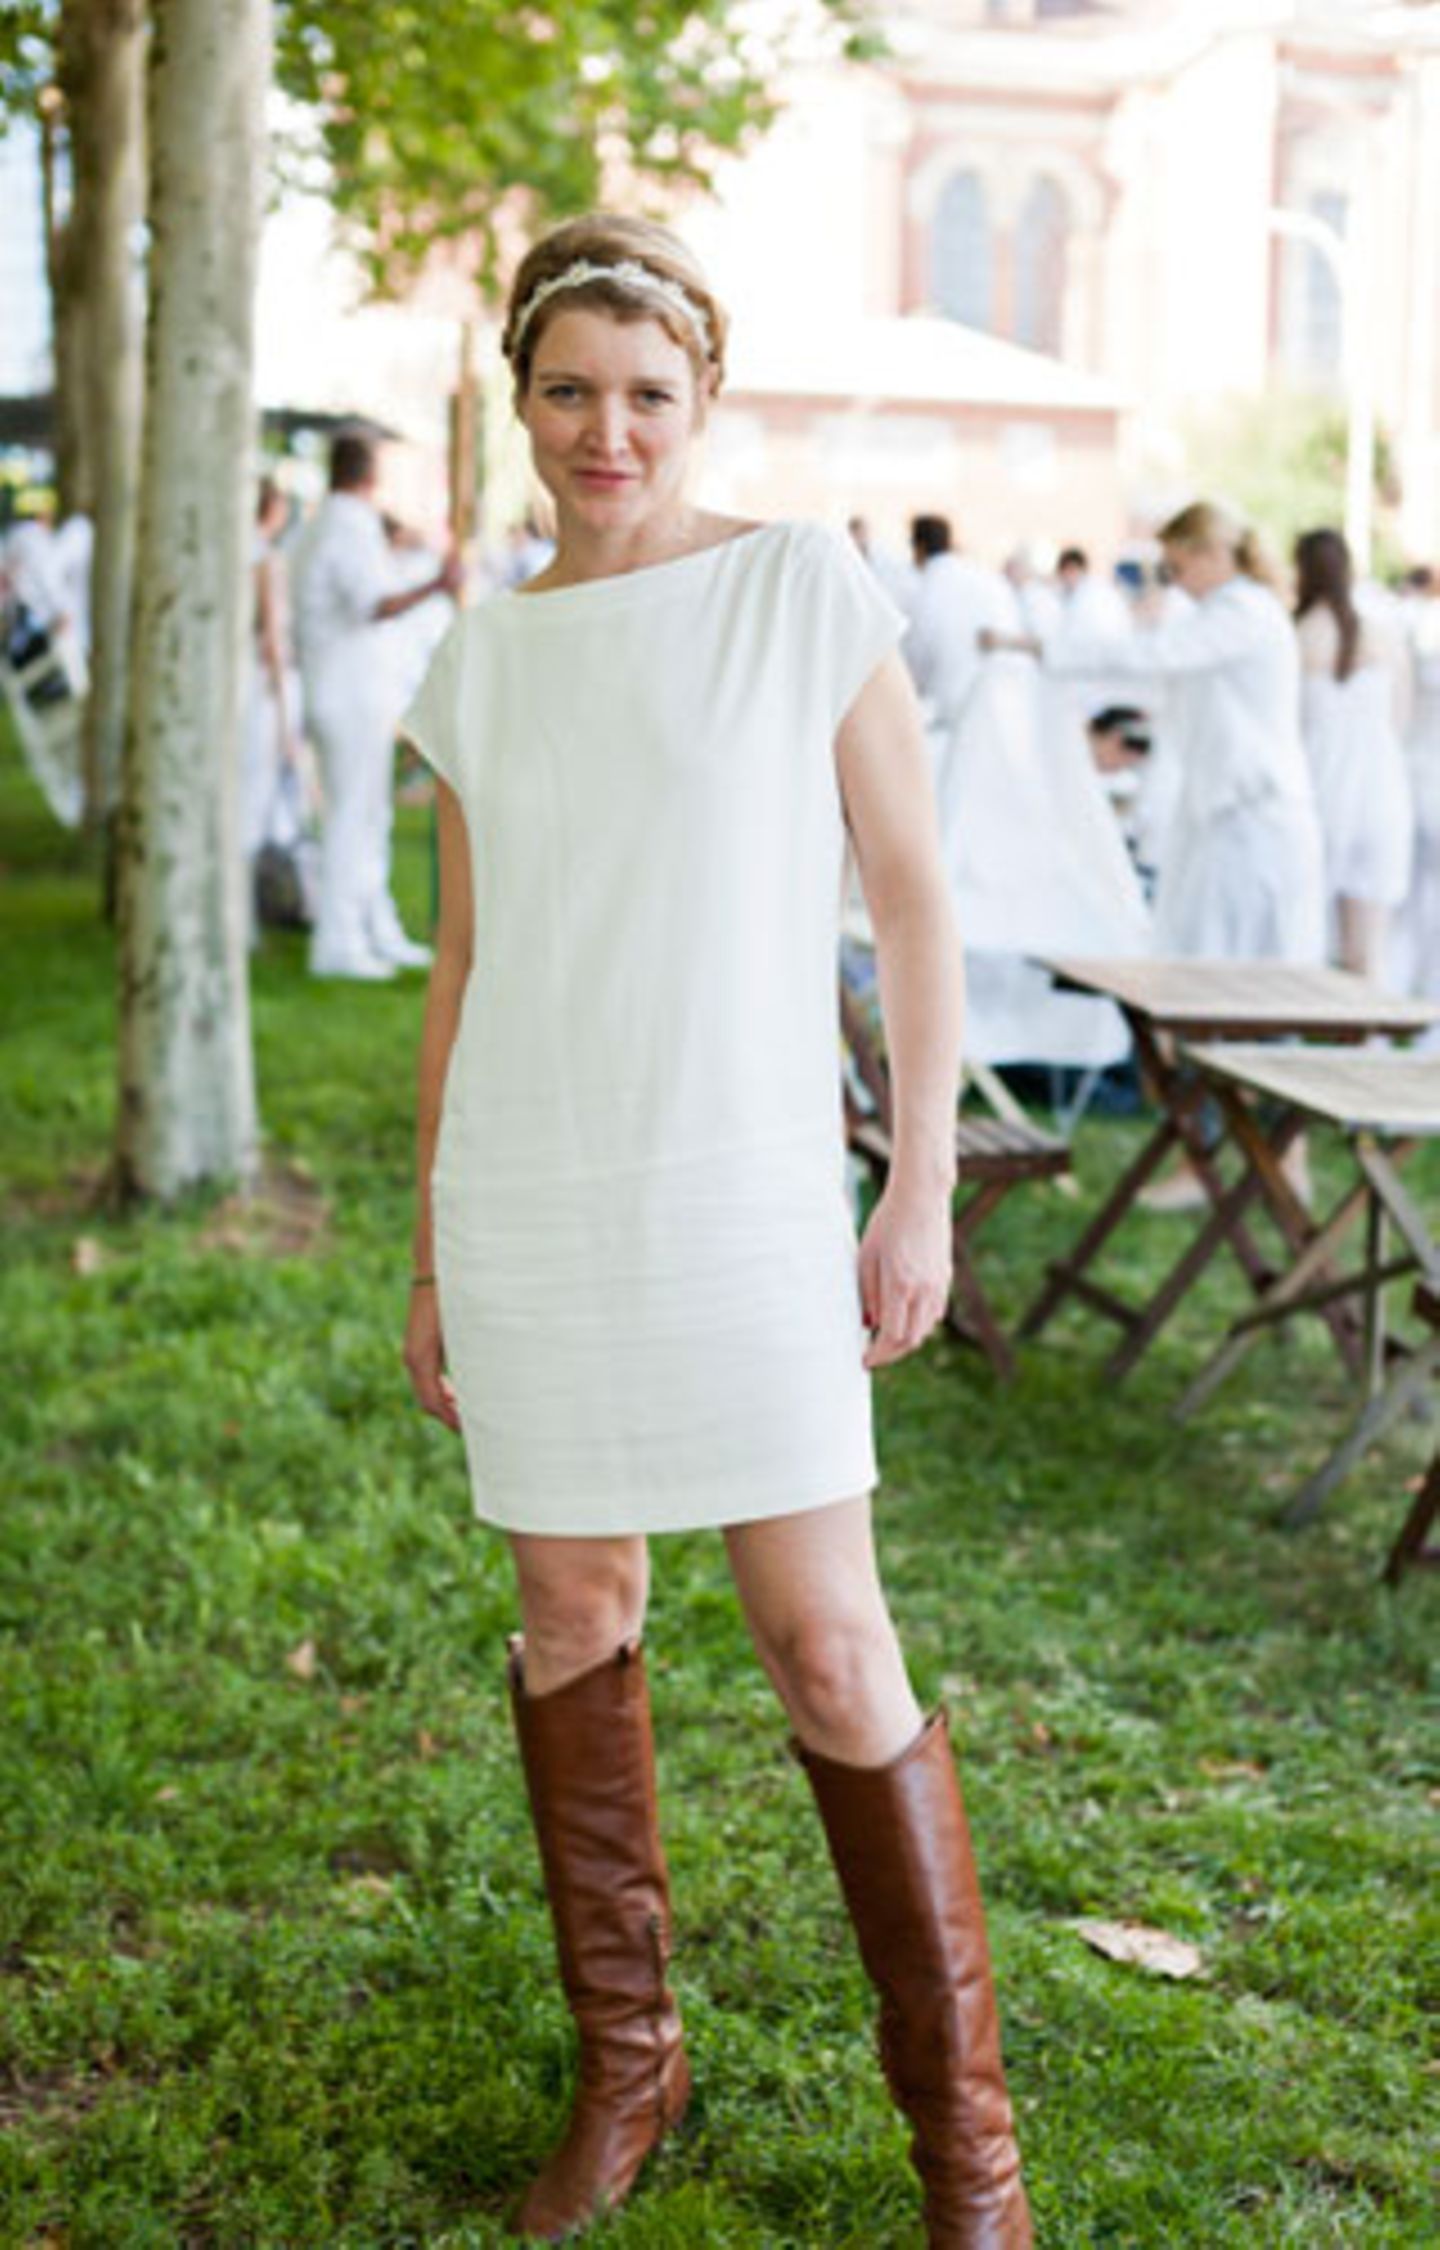 Gelungene Kombination: Zum schlichten weißen Minikleid und Haarband passen auch derbe braune Lederstiefel.